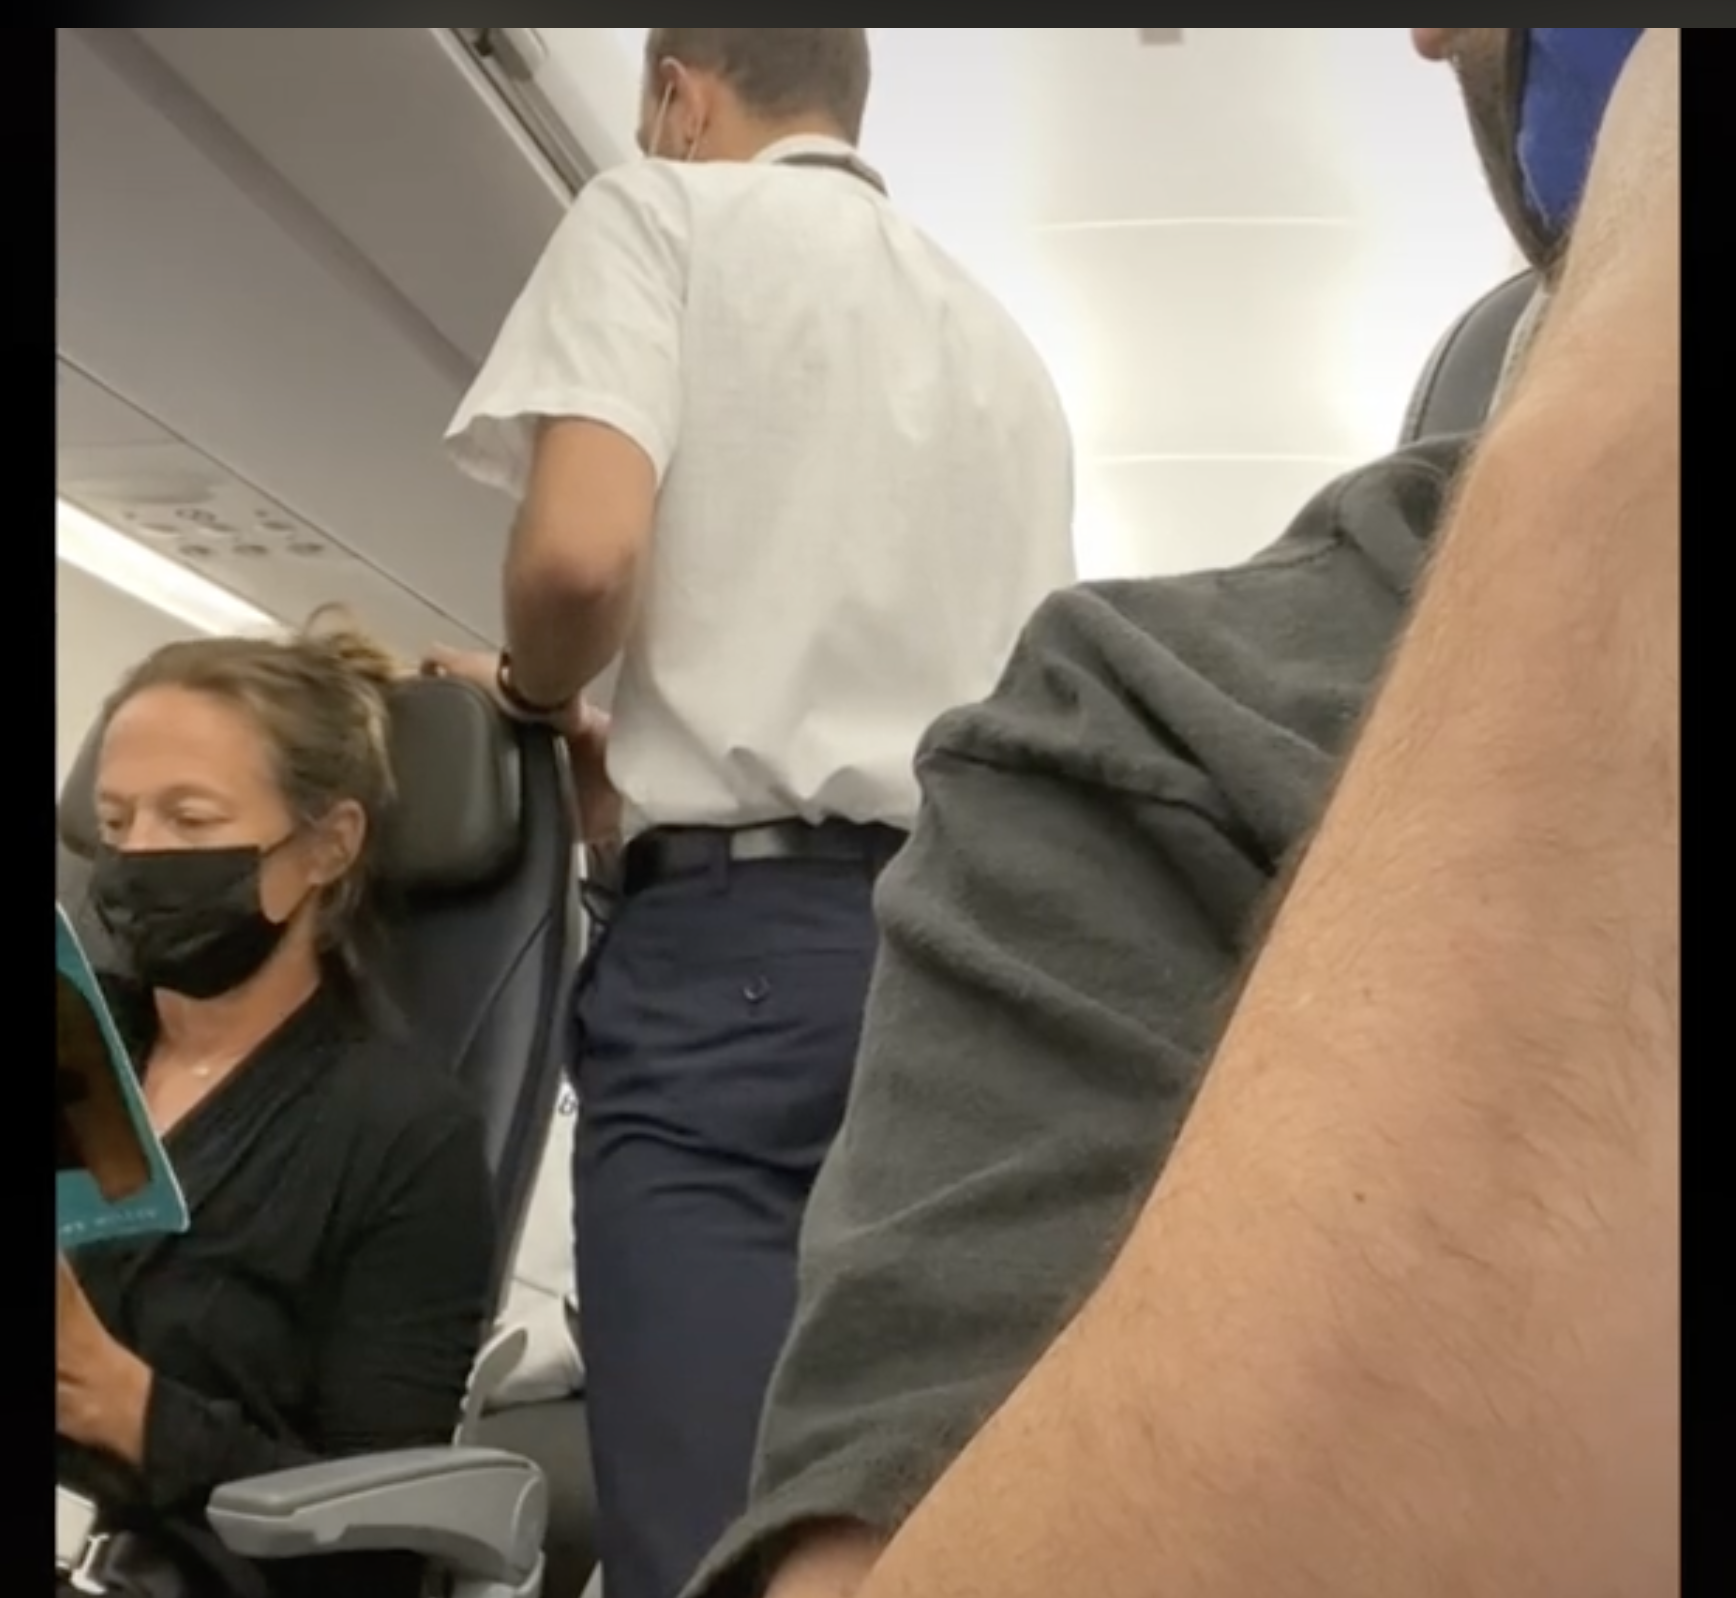 Eine der Flugbegleiterinnen ist dabei zu sehen, wie sie während des Fluges mit einem angeblich widerspenstigen Passagier spricht. | Quelle: tiktok.com/@brentunderwood